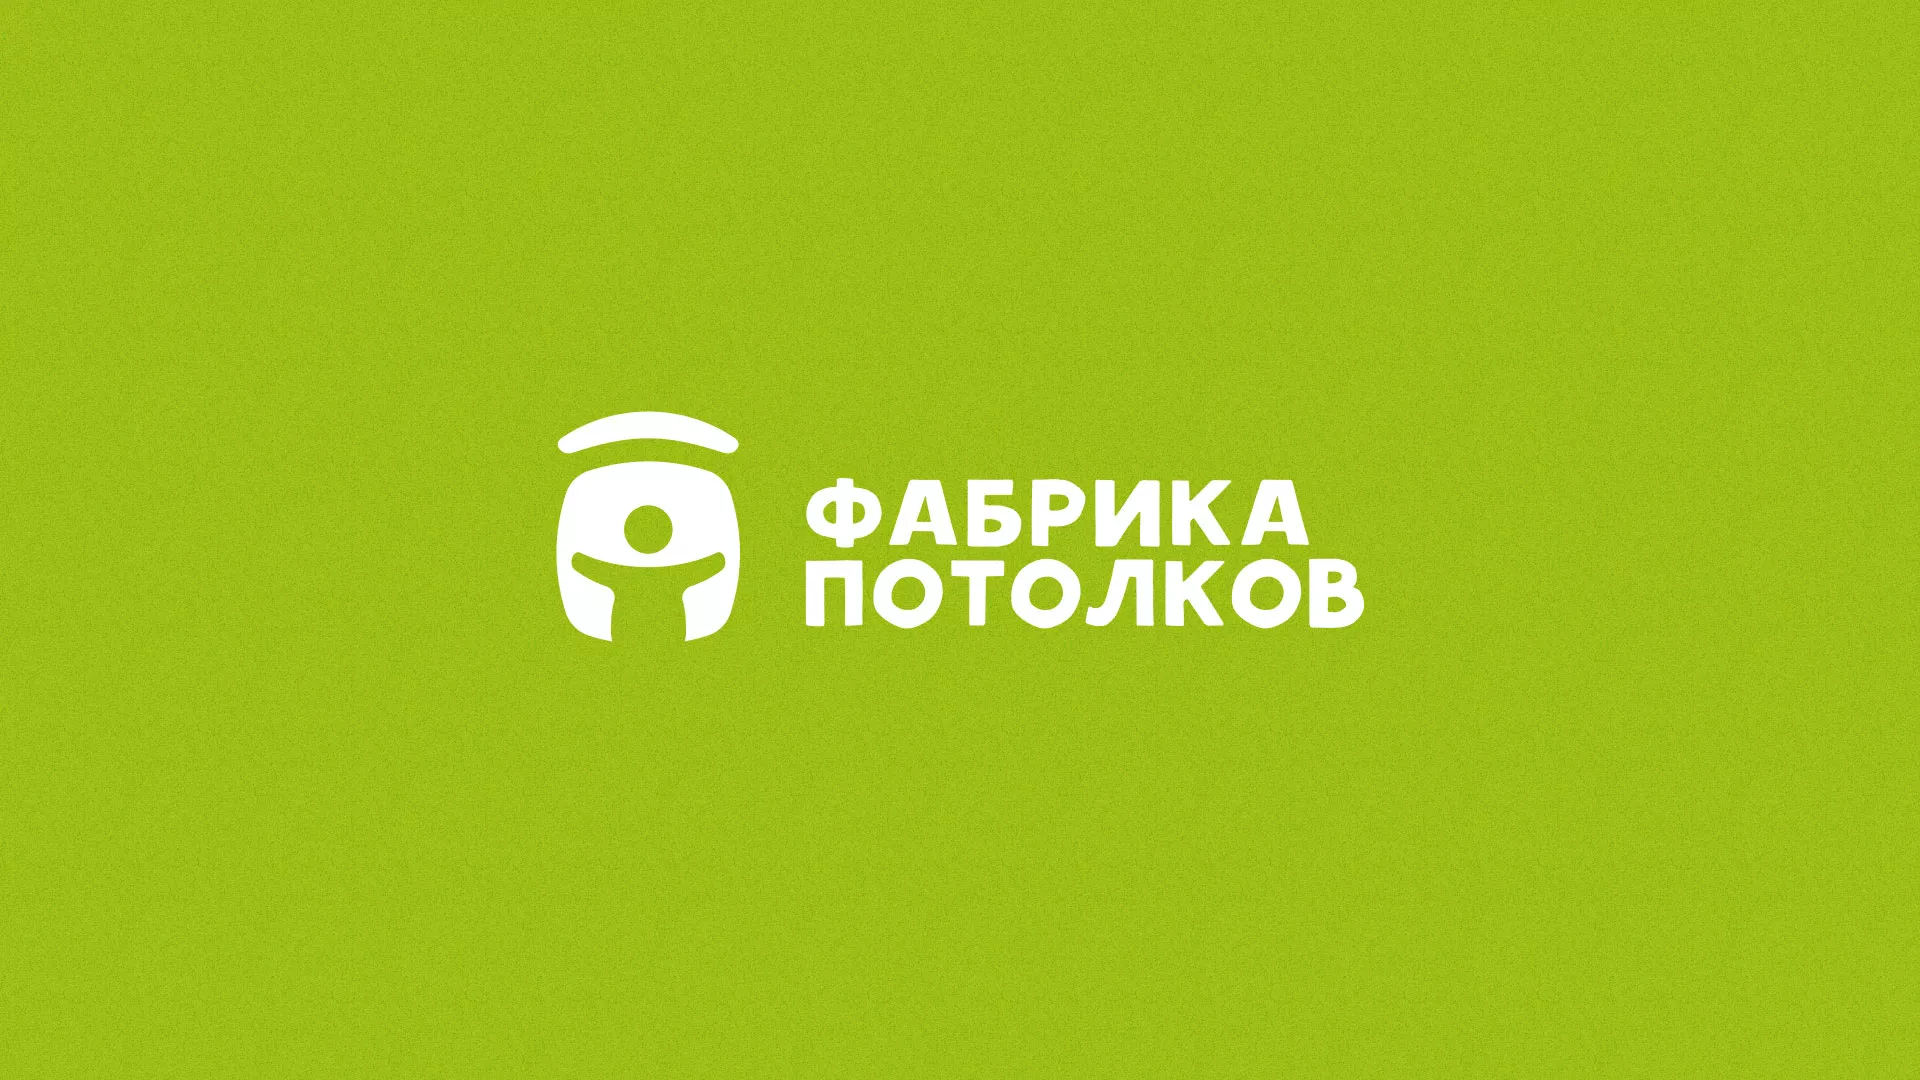 Разработка логотипа для производства натяжных потолков в Уварово